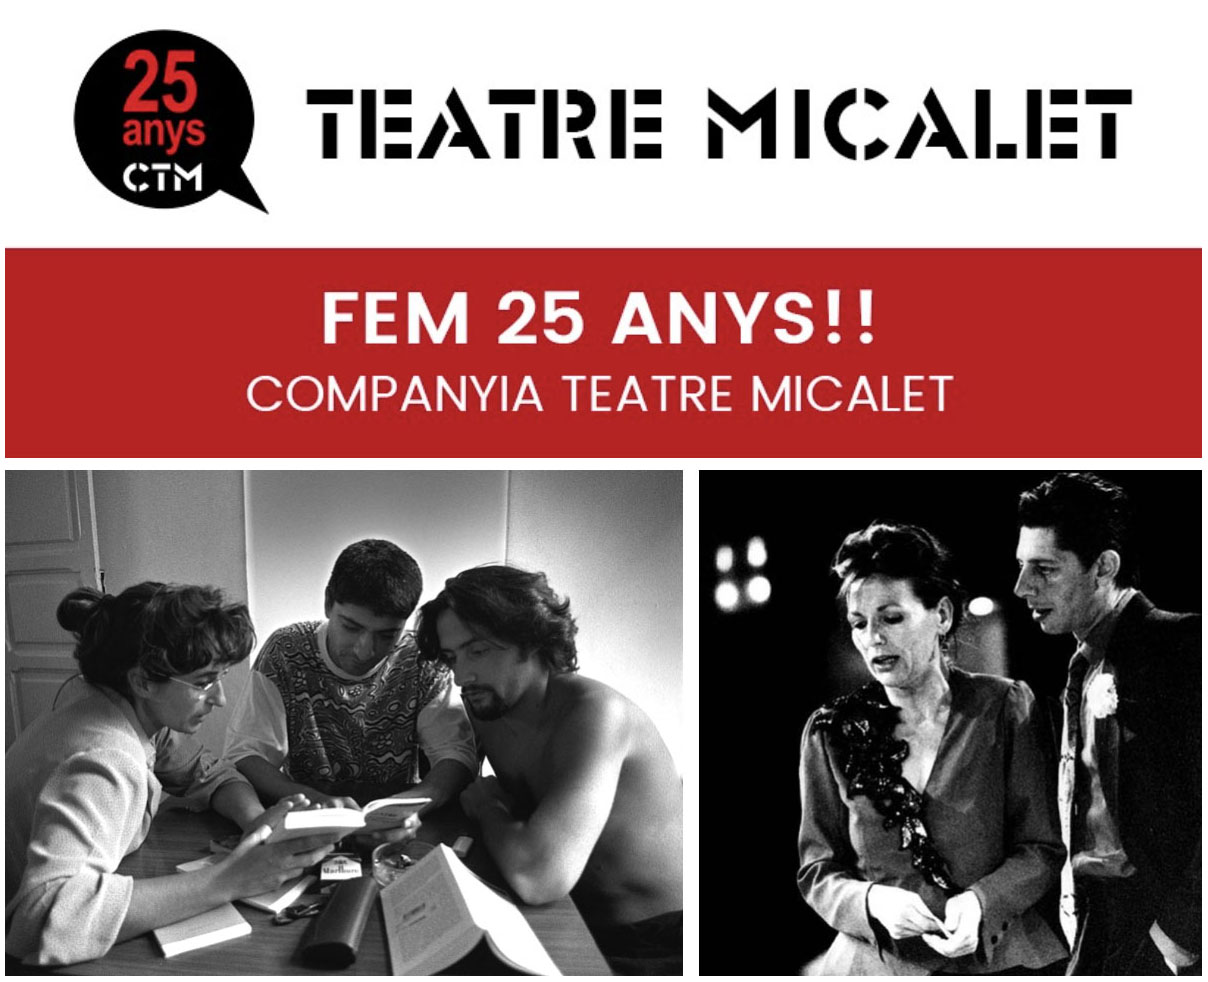 La Companyia Teatre Micalet celebra 25 años con un cumpleaños virtual